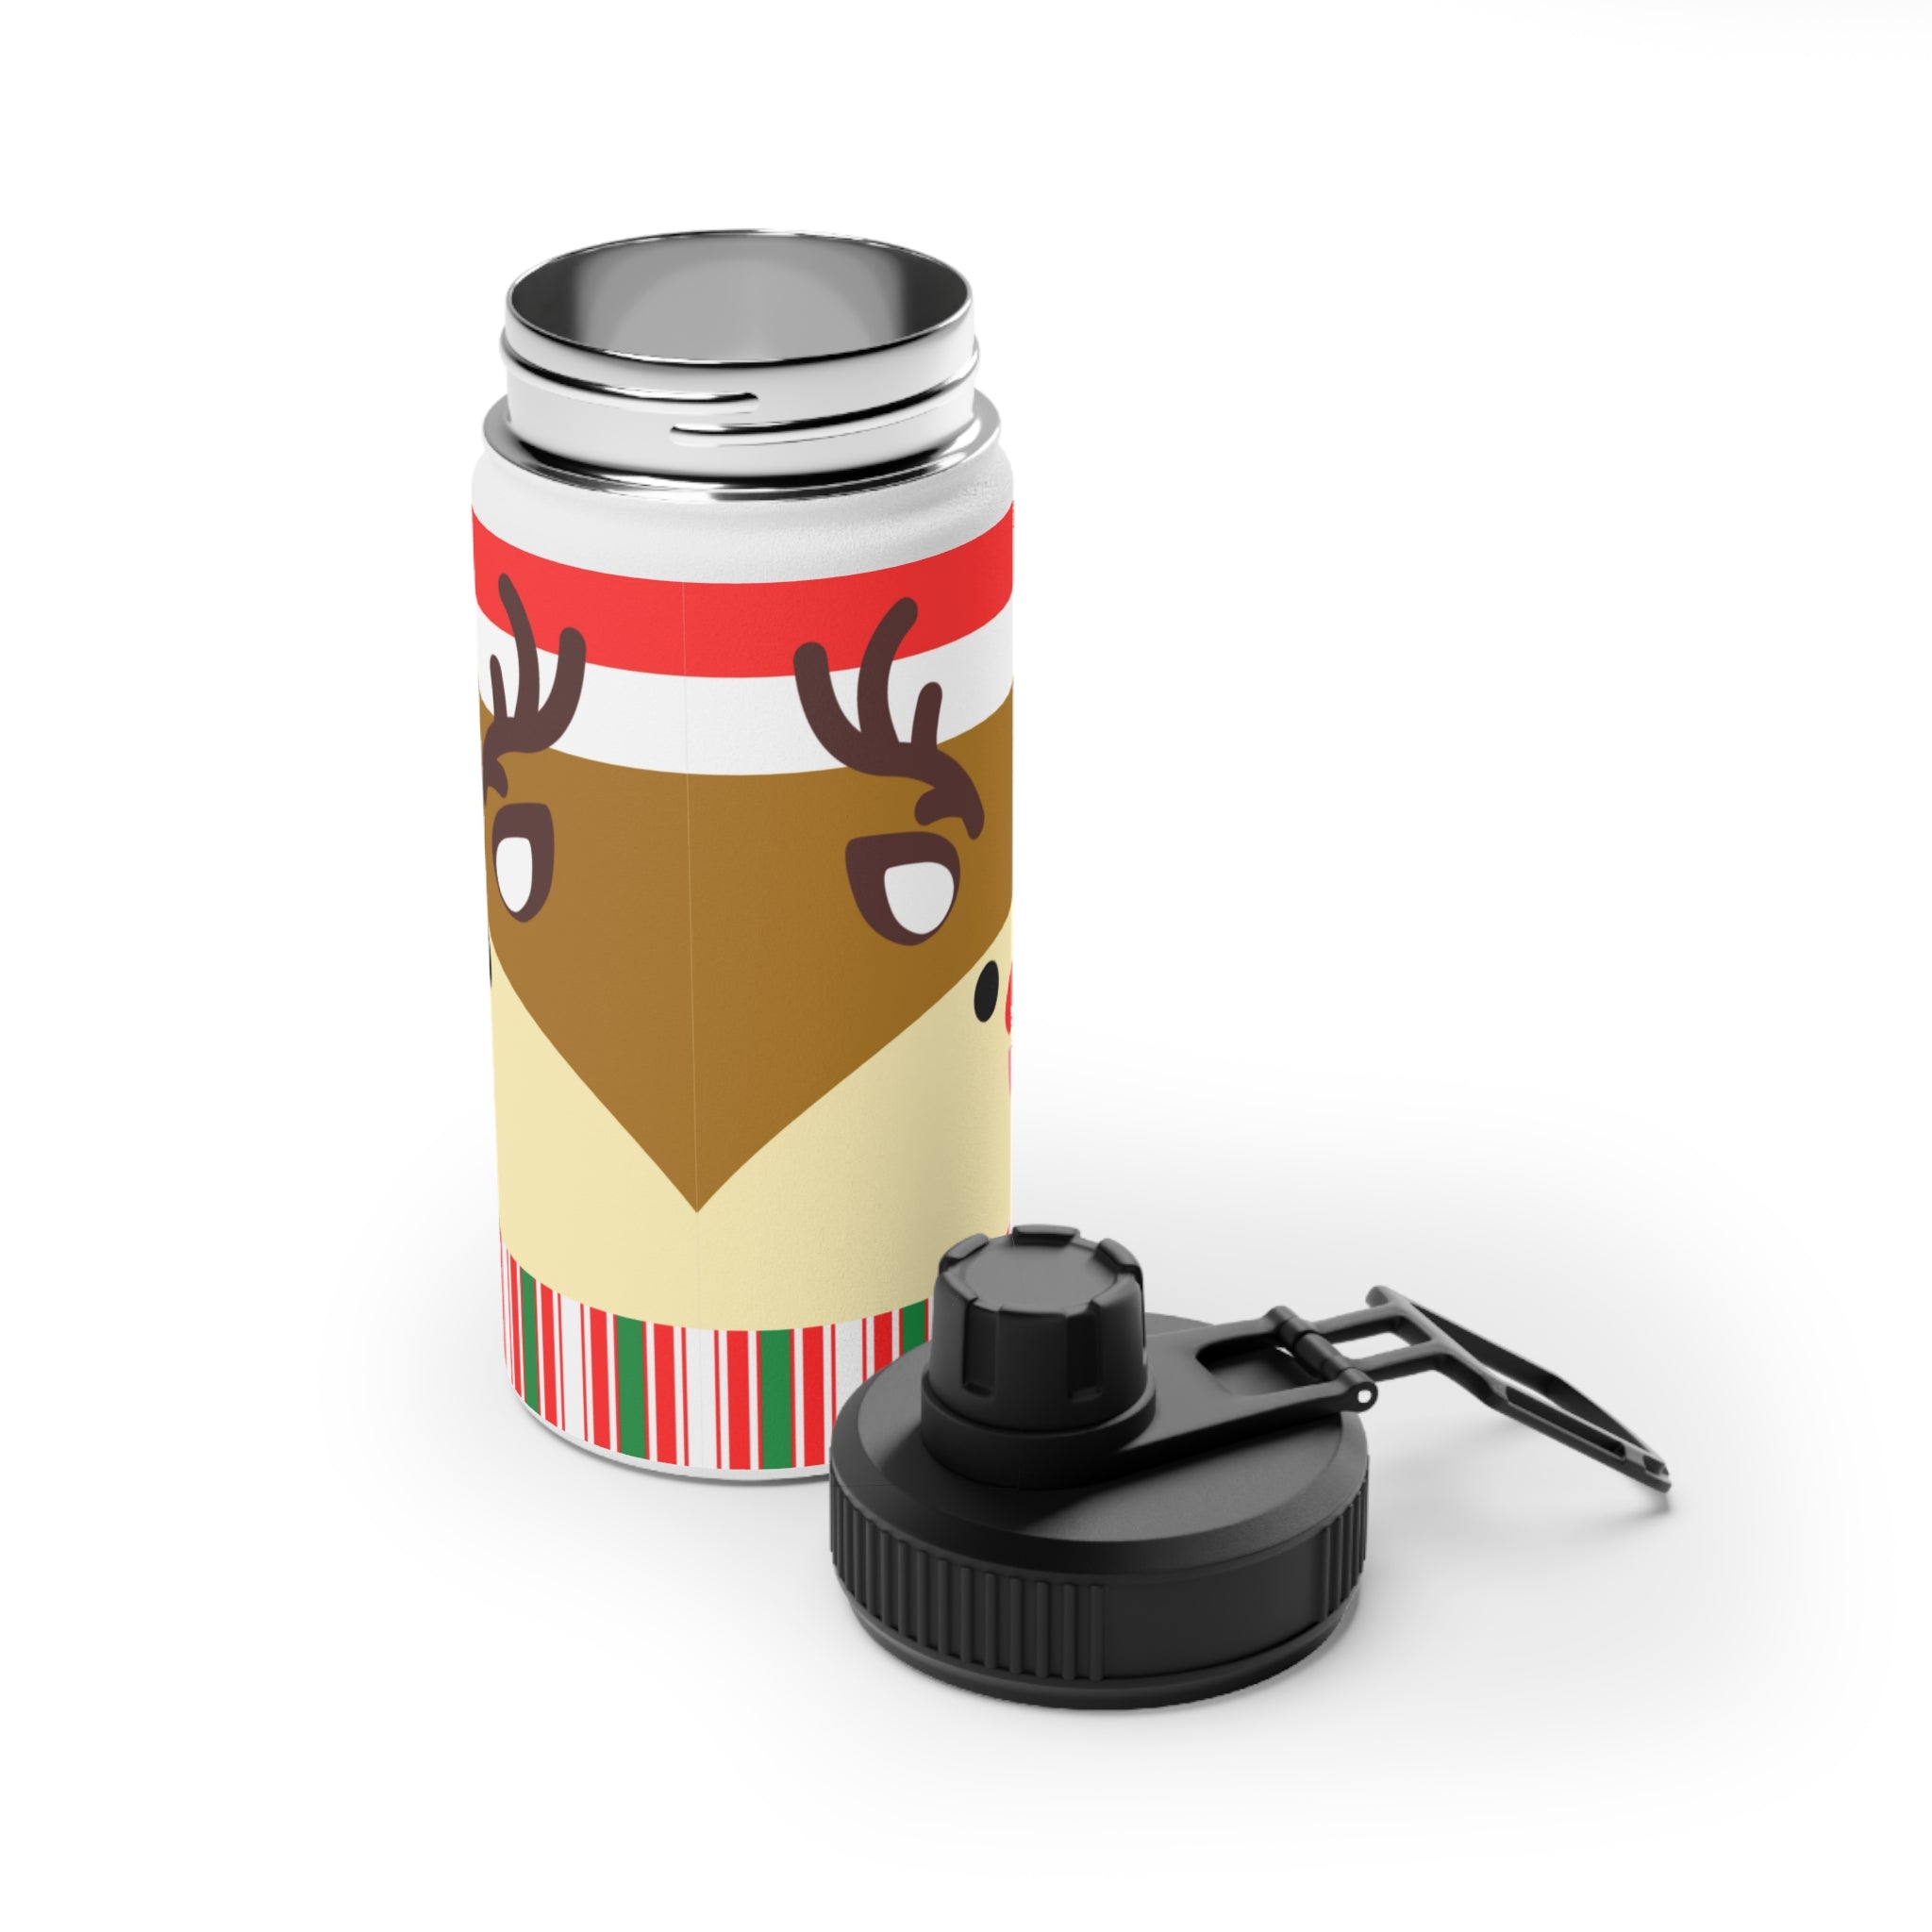 Christmas Reindeer Stainless Steel Water Bottle